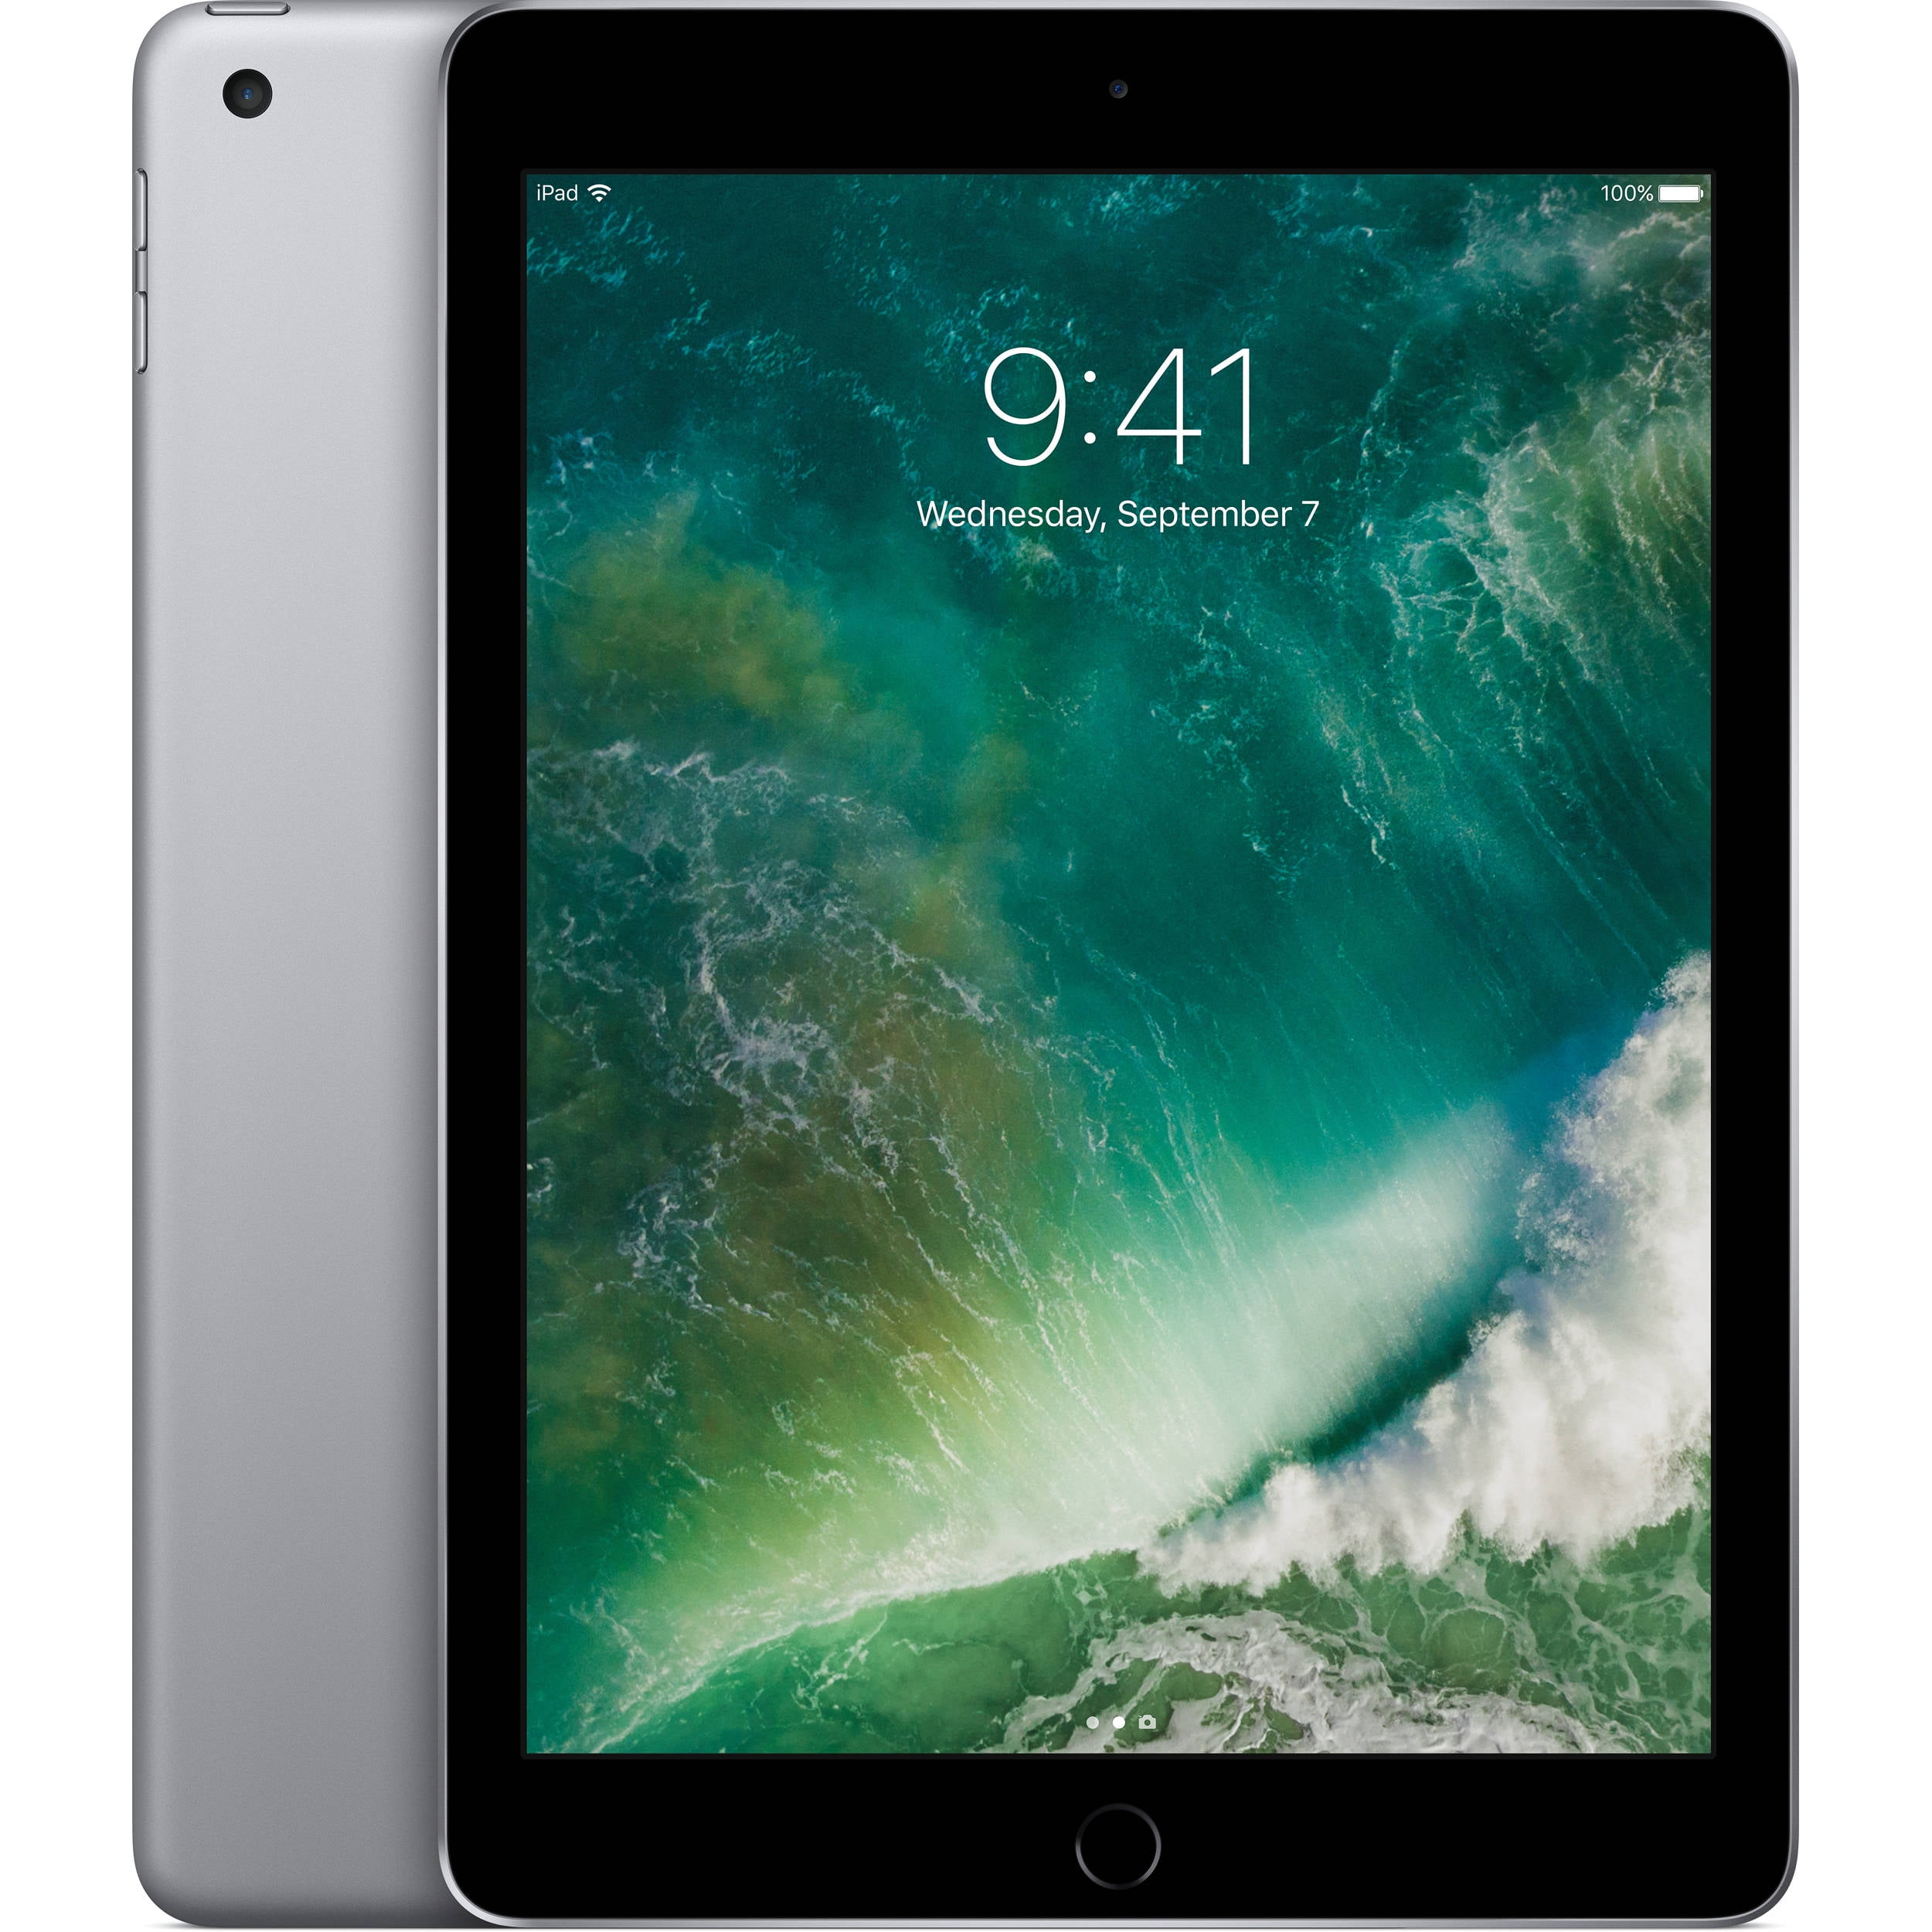 Restored Apple iPad 5th Generation 128GB Wi-Fi - Space Gray